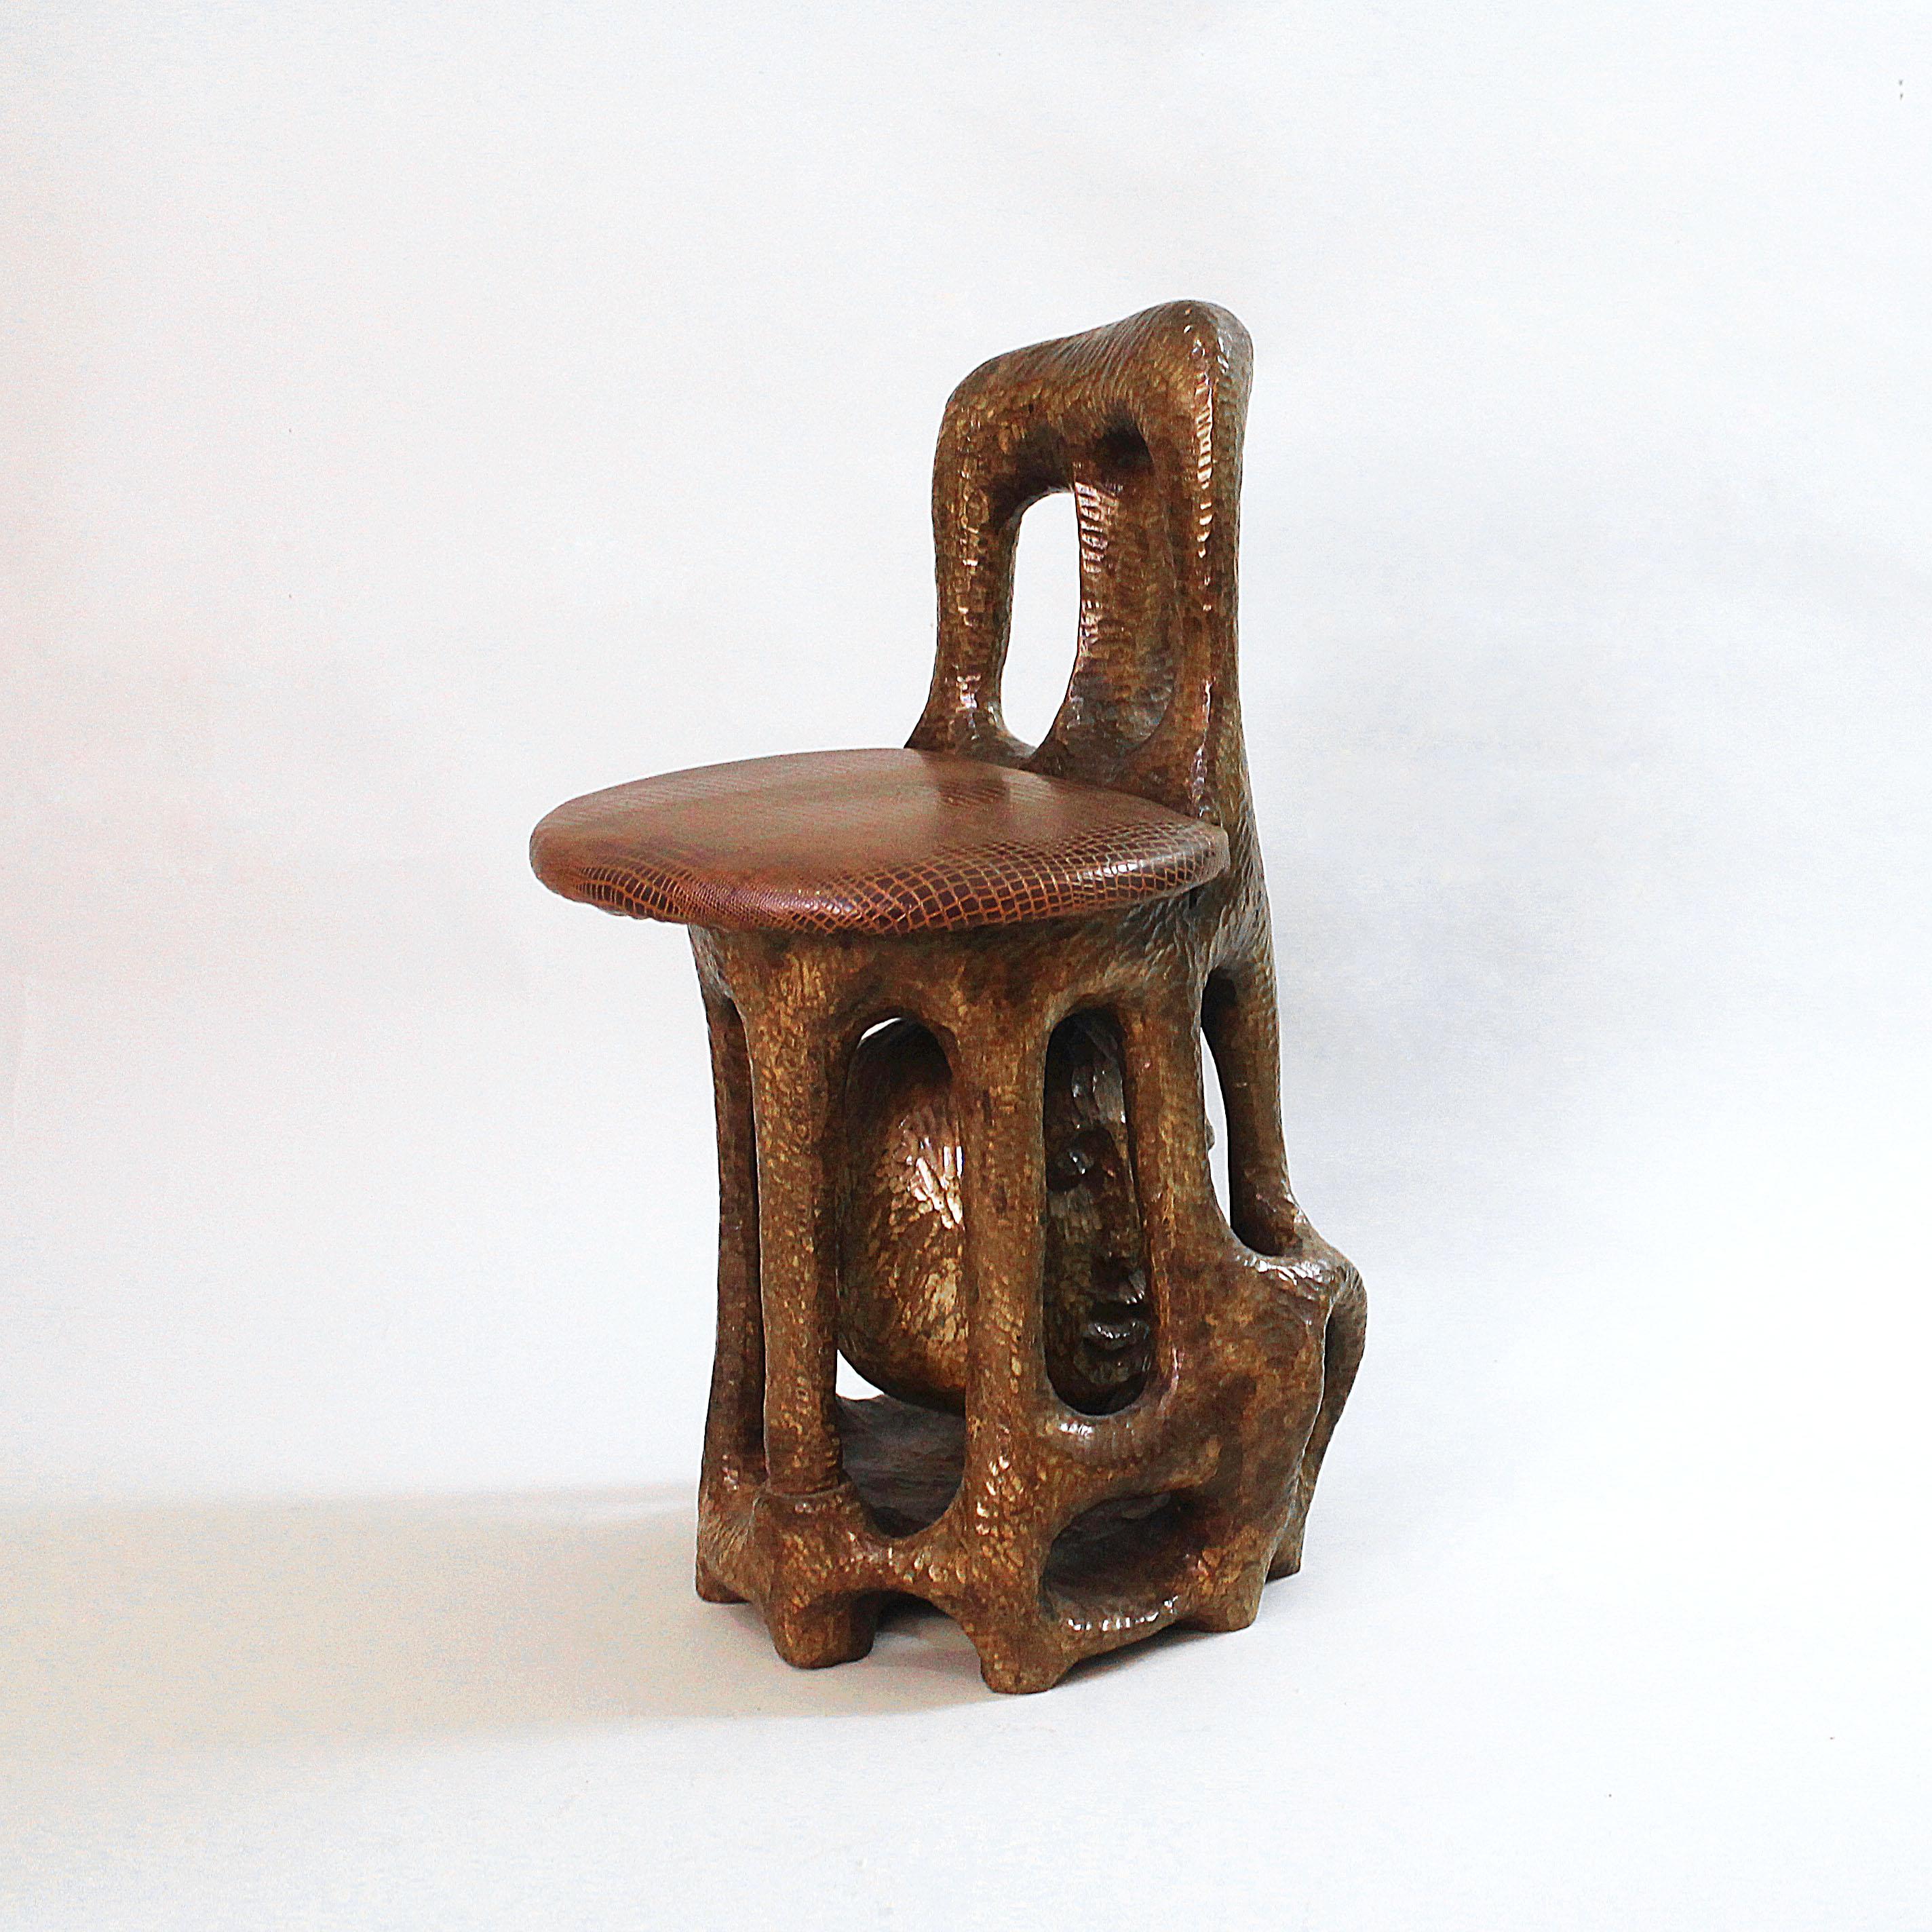 Primitive Sol Garson Signed Sculptural Chair 1970s Art Hand Carved Wood Sculpture Mandela For Sale